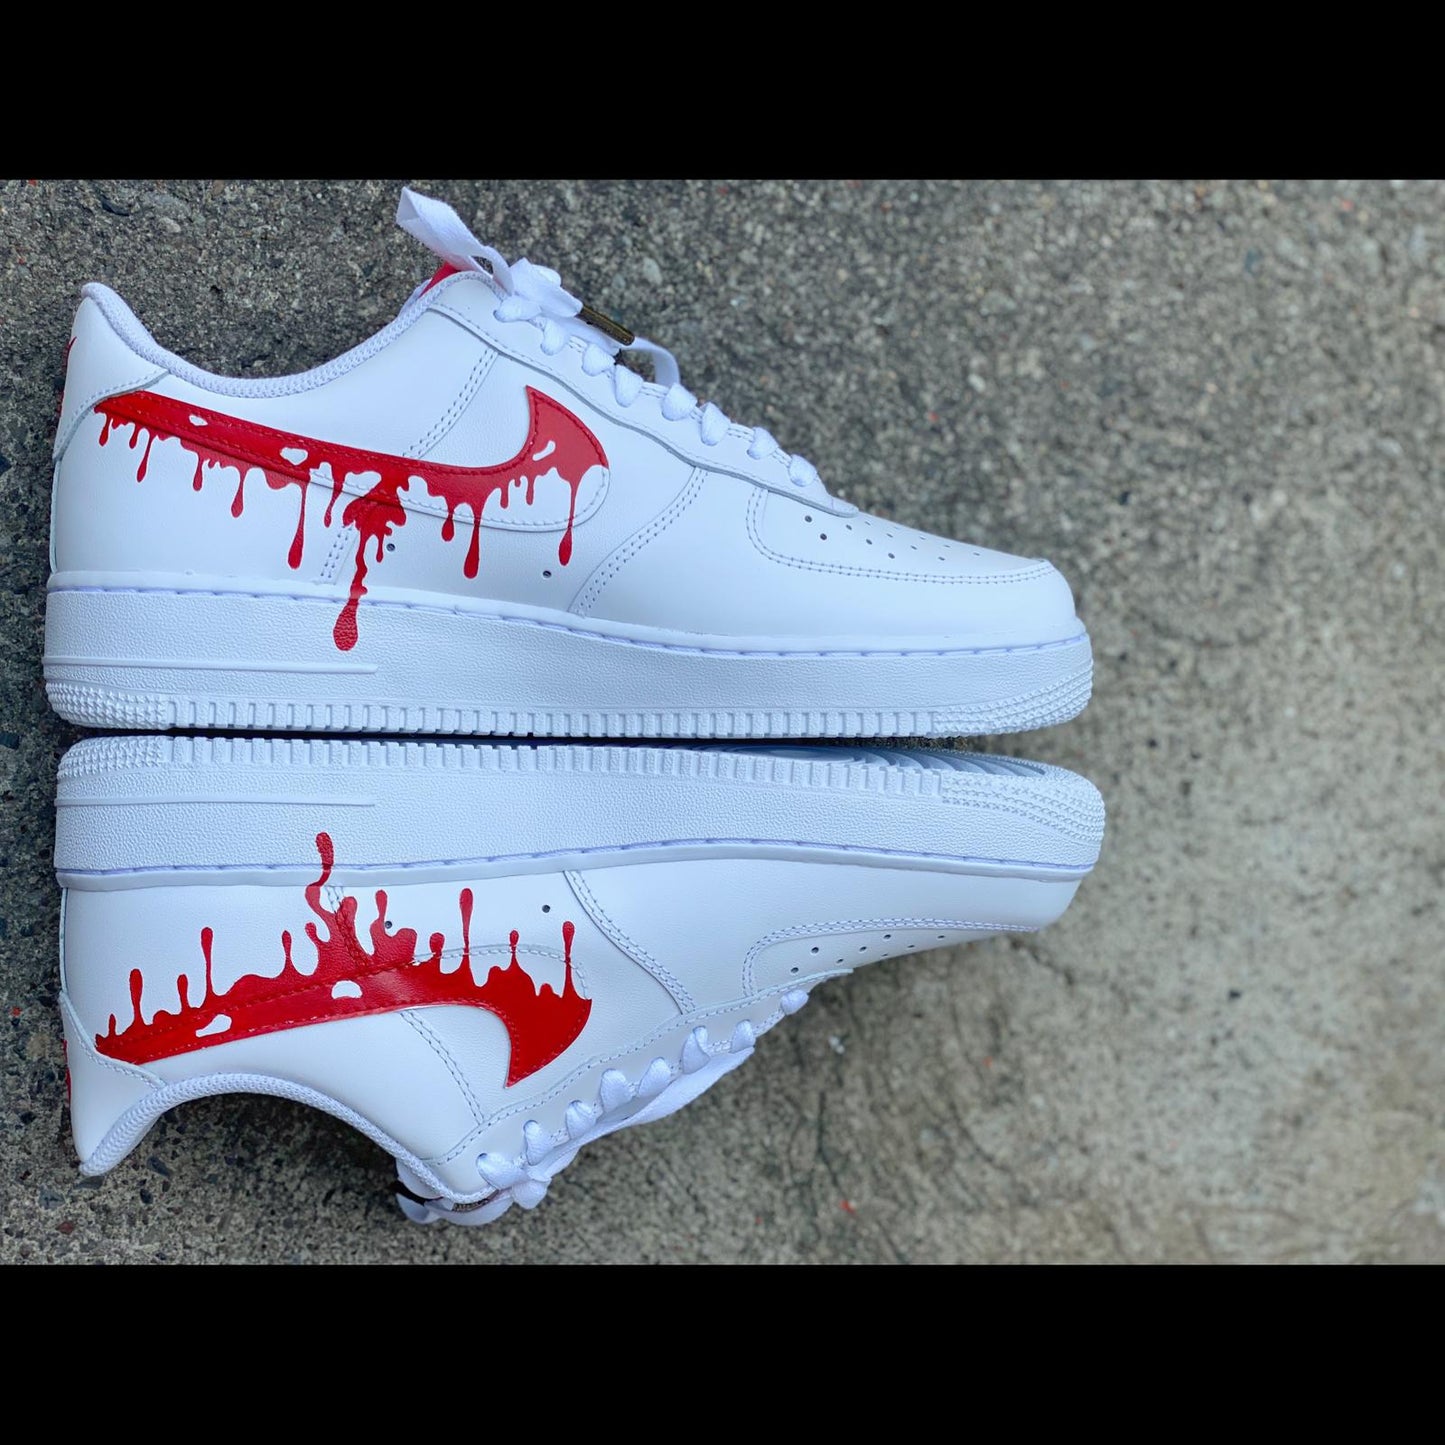 Nike Air Force 1 Custom Sneakers Blood Drip Splatter Red Black